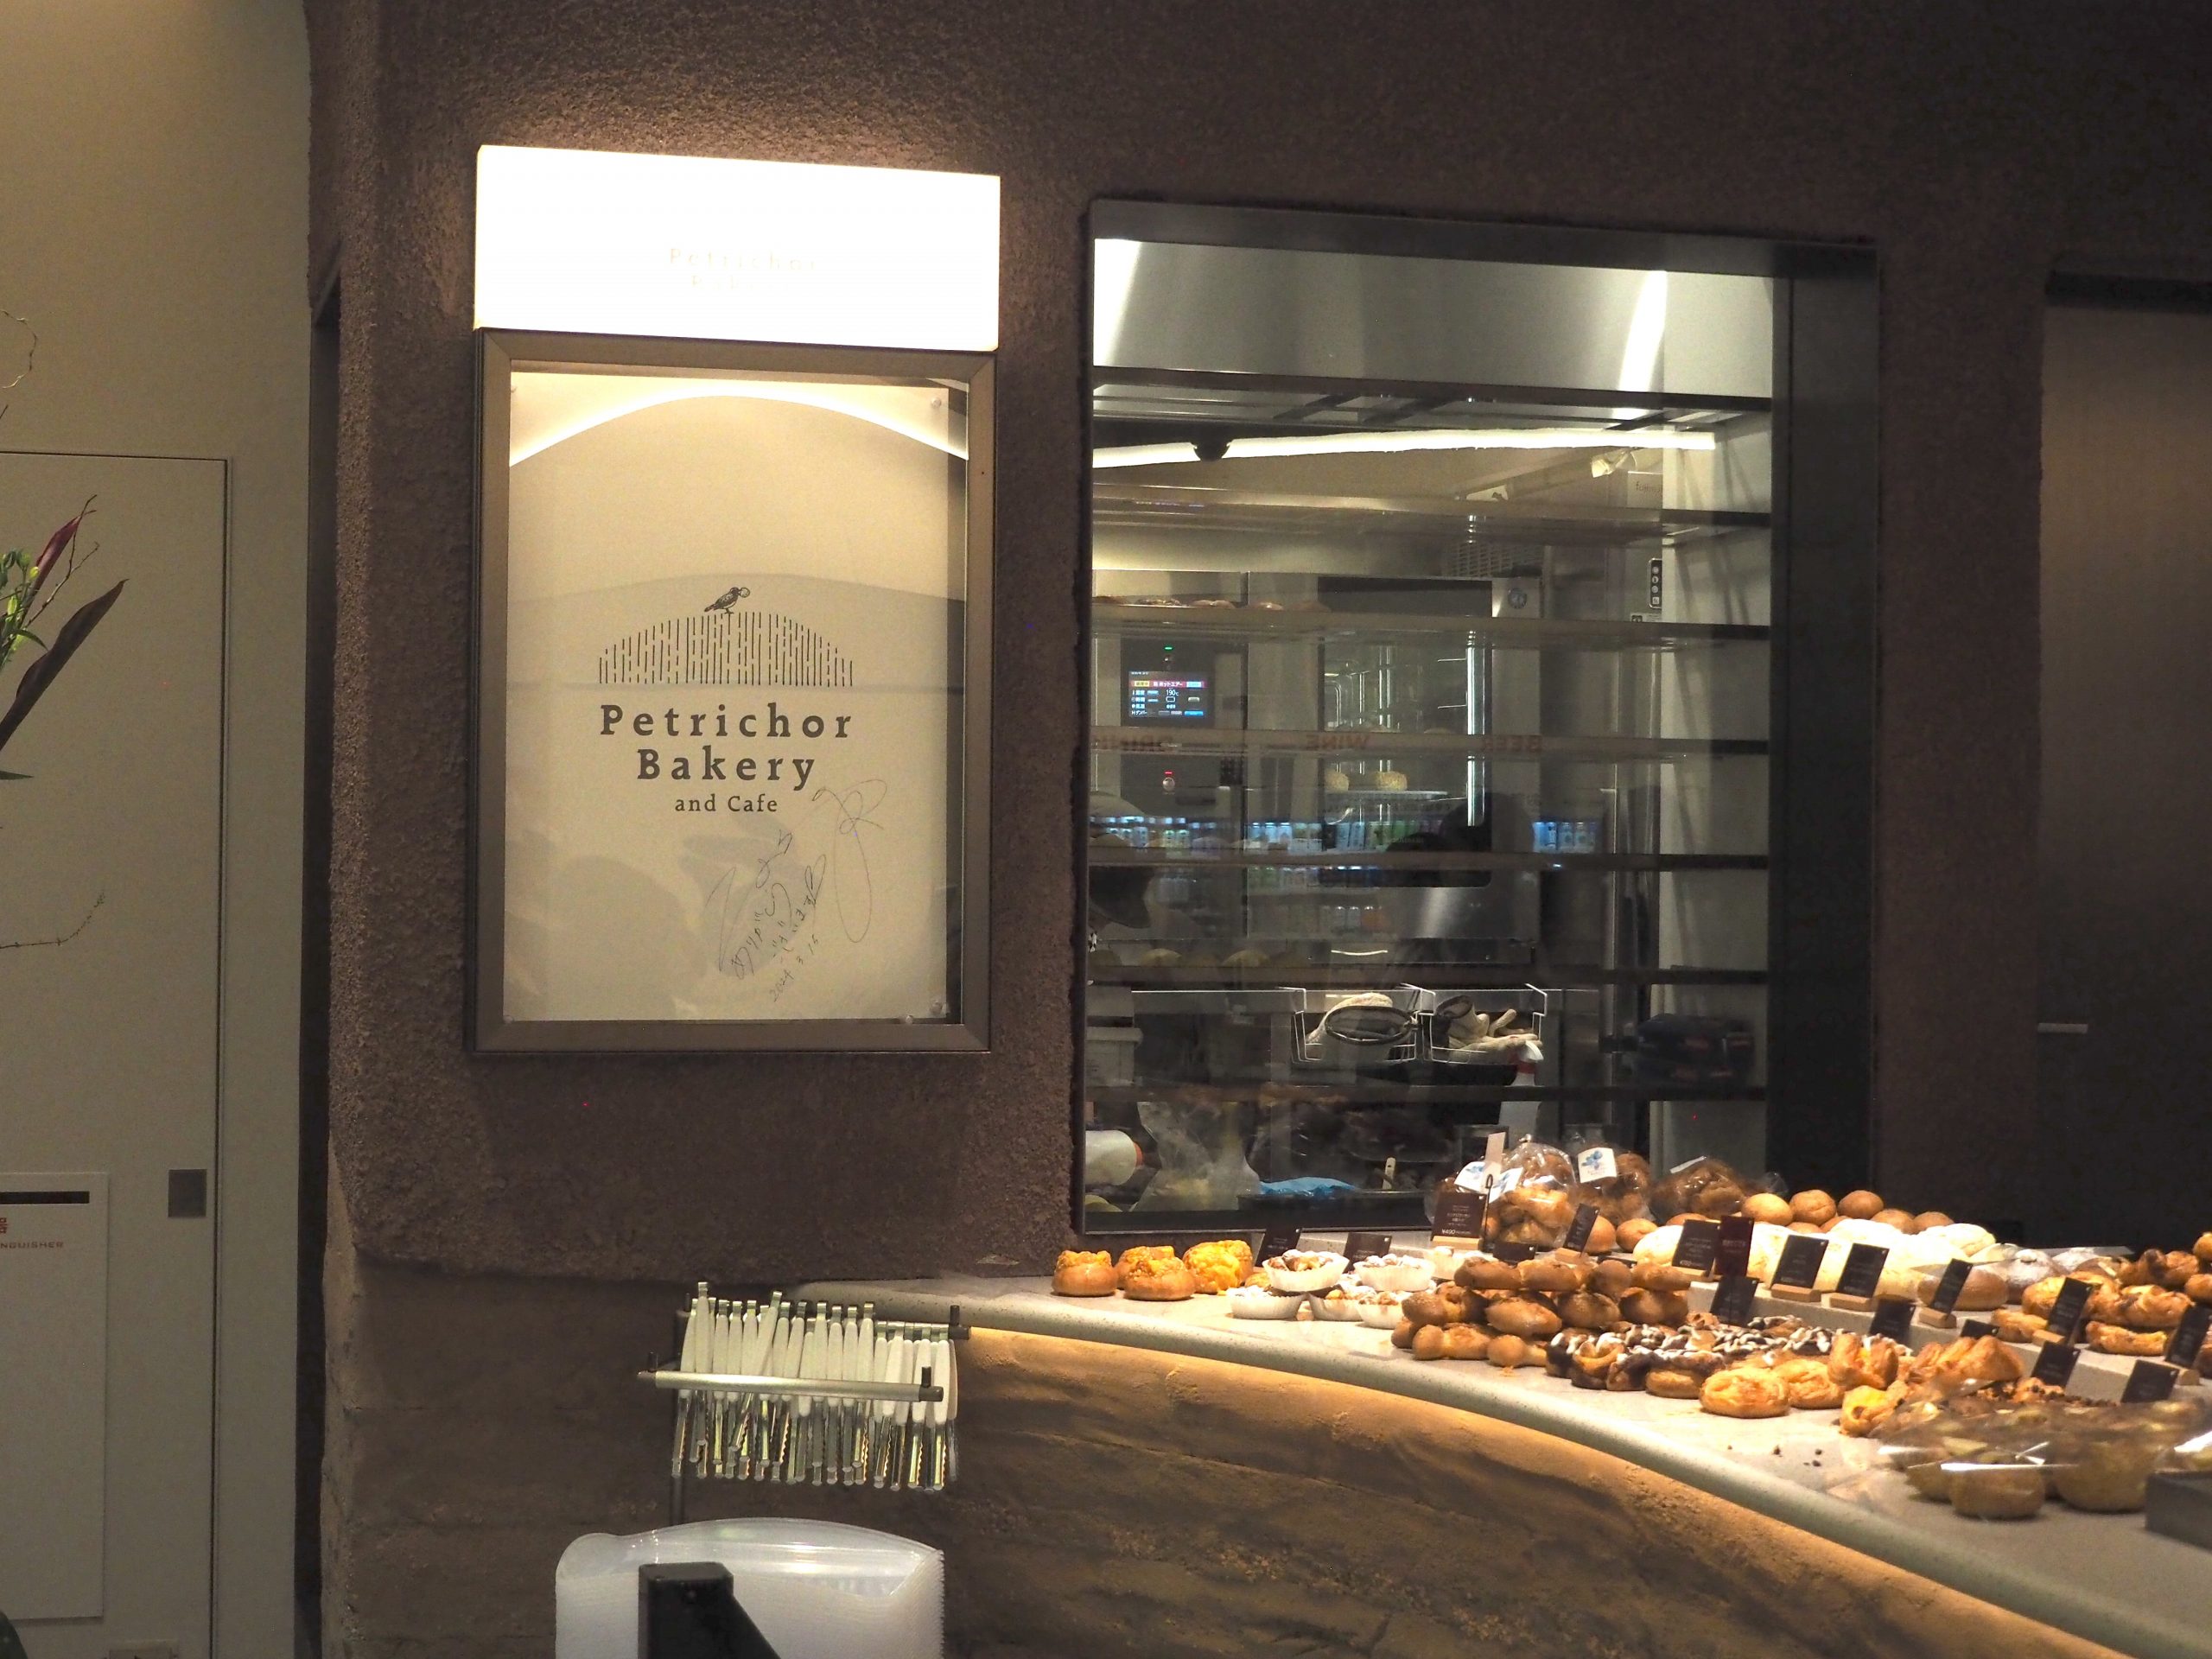 【3/18開店】「Petrichor Bakery and Cafe」は、サンマルクが手掛けるチーズとパンのおいしいお店